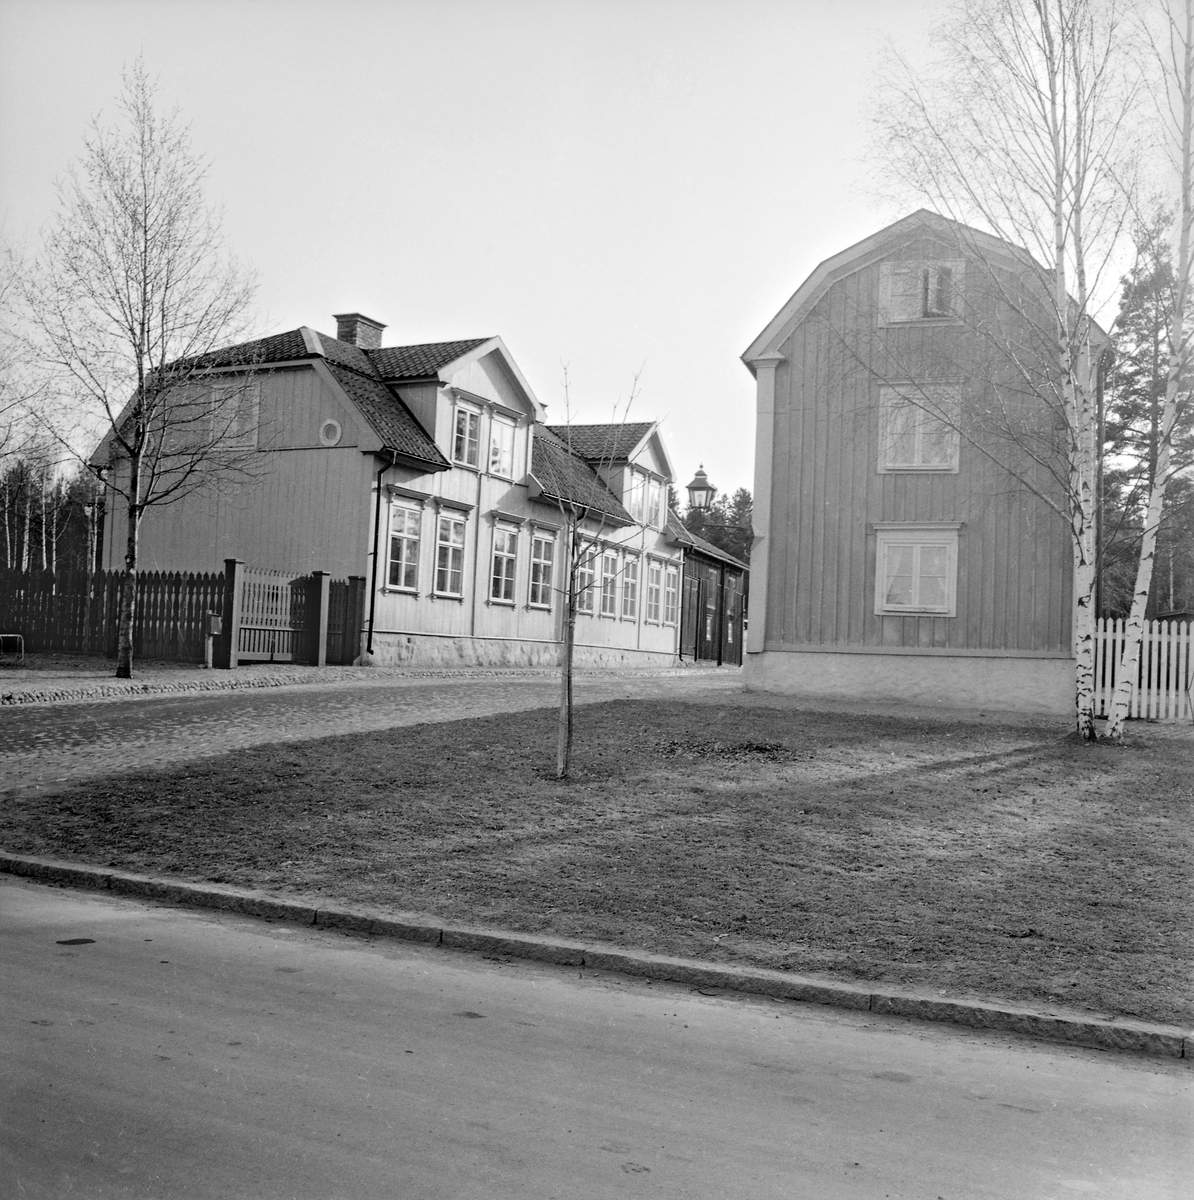 Huitfeltska gården och Mamsellernas hus var de första att återuppföras i friluftsmuseet Gamla Linköping. Huitfeltska flyttades från Ågatan 57 och kunde på sin nya plats tas i bruk som samlingslokal 1951. Huvudbyggnaden var ursprungligen uppförd 1807 av dåvarande ägare landsfiskalen Karl Henrik Svan. Huset förlängdes år 1843 under kapten Önnert Jönssons ägo och fick då bland annan förändring sin släta panel. Gården har fått sitt namn efter regementsläkaren Åke Huitfelt, som från år 1860 var dess ägare och även lät den gå i arv till dottern Eva. Mamsellernas hus flyttades från Nygatan 3 till Gamla Linköping en februarinatt 1952. Huset restes i begynnelsen av landssekreteraren Vilhelm Pereswetoff-Morath och stod klart år 1793. Gården bär dock namn efter senare ägare i hushållsmamsell Karin Laurin och vidare mamsell Emilia Pettersson. Odaterad bild från tidigast våren 1953.